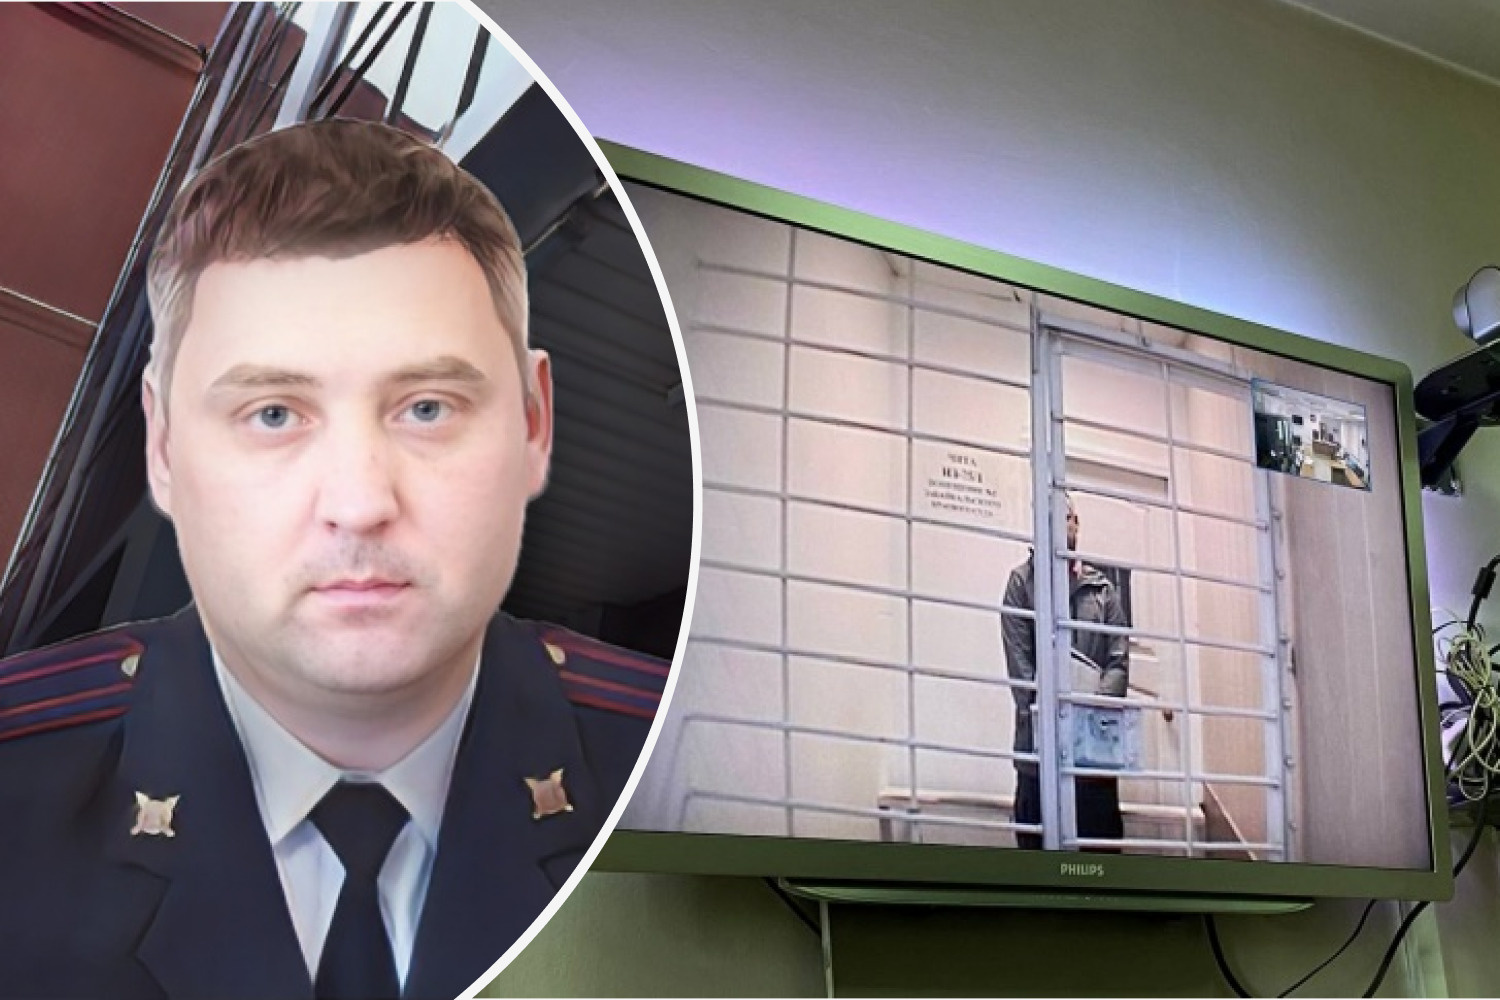 Ehemaliger stellvertretender Innenminister von Baschkortostan soll in eine strenge Regimekolonie überführt werden